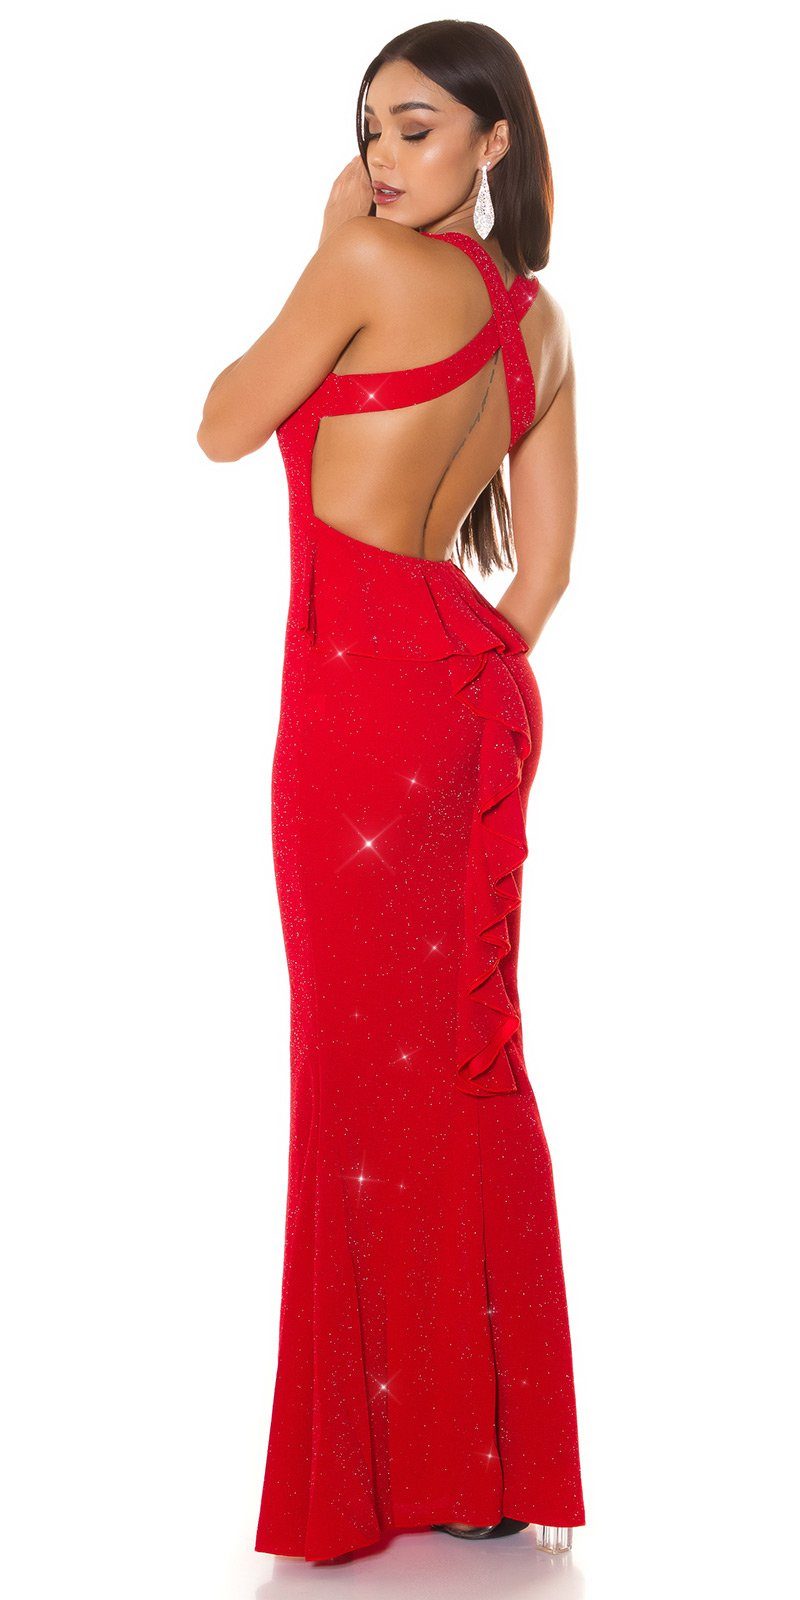 rotsilber Maxikleid Partykleid Koucla Schößchen glitzerndes und offenem Abendkleid Rücken mit